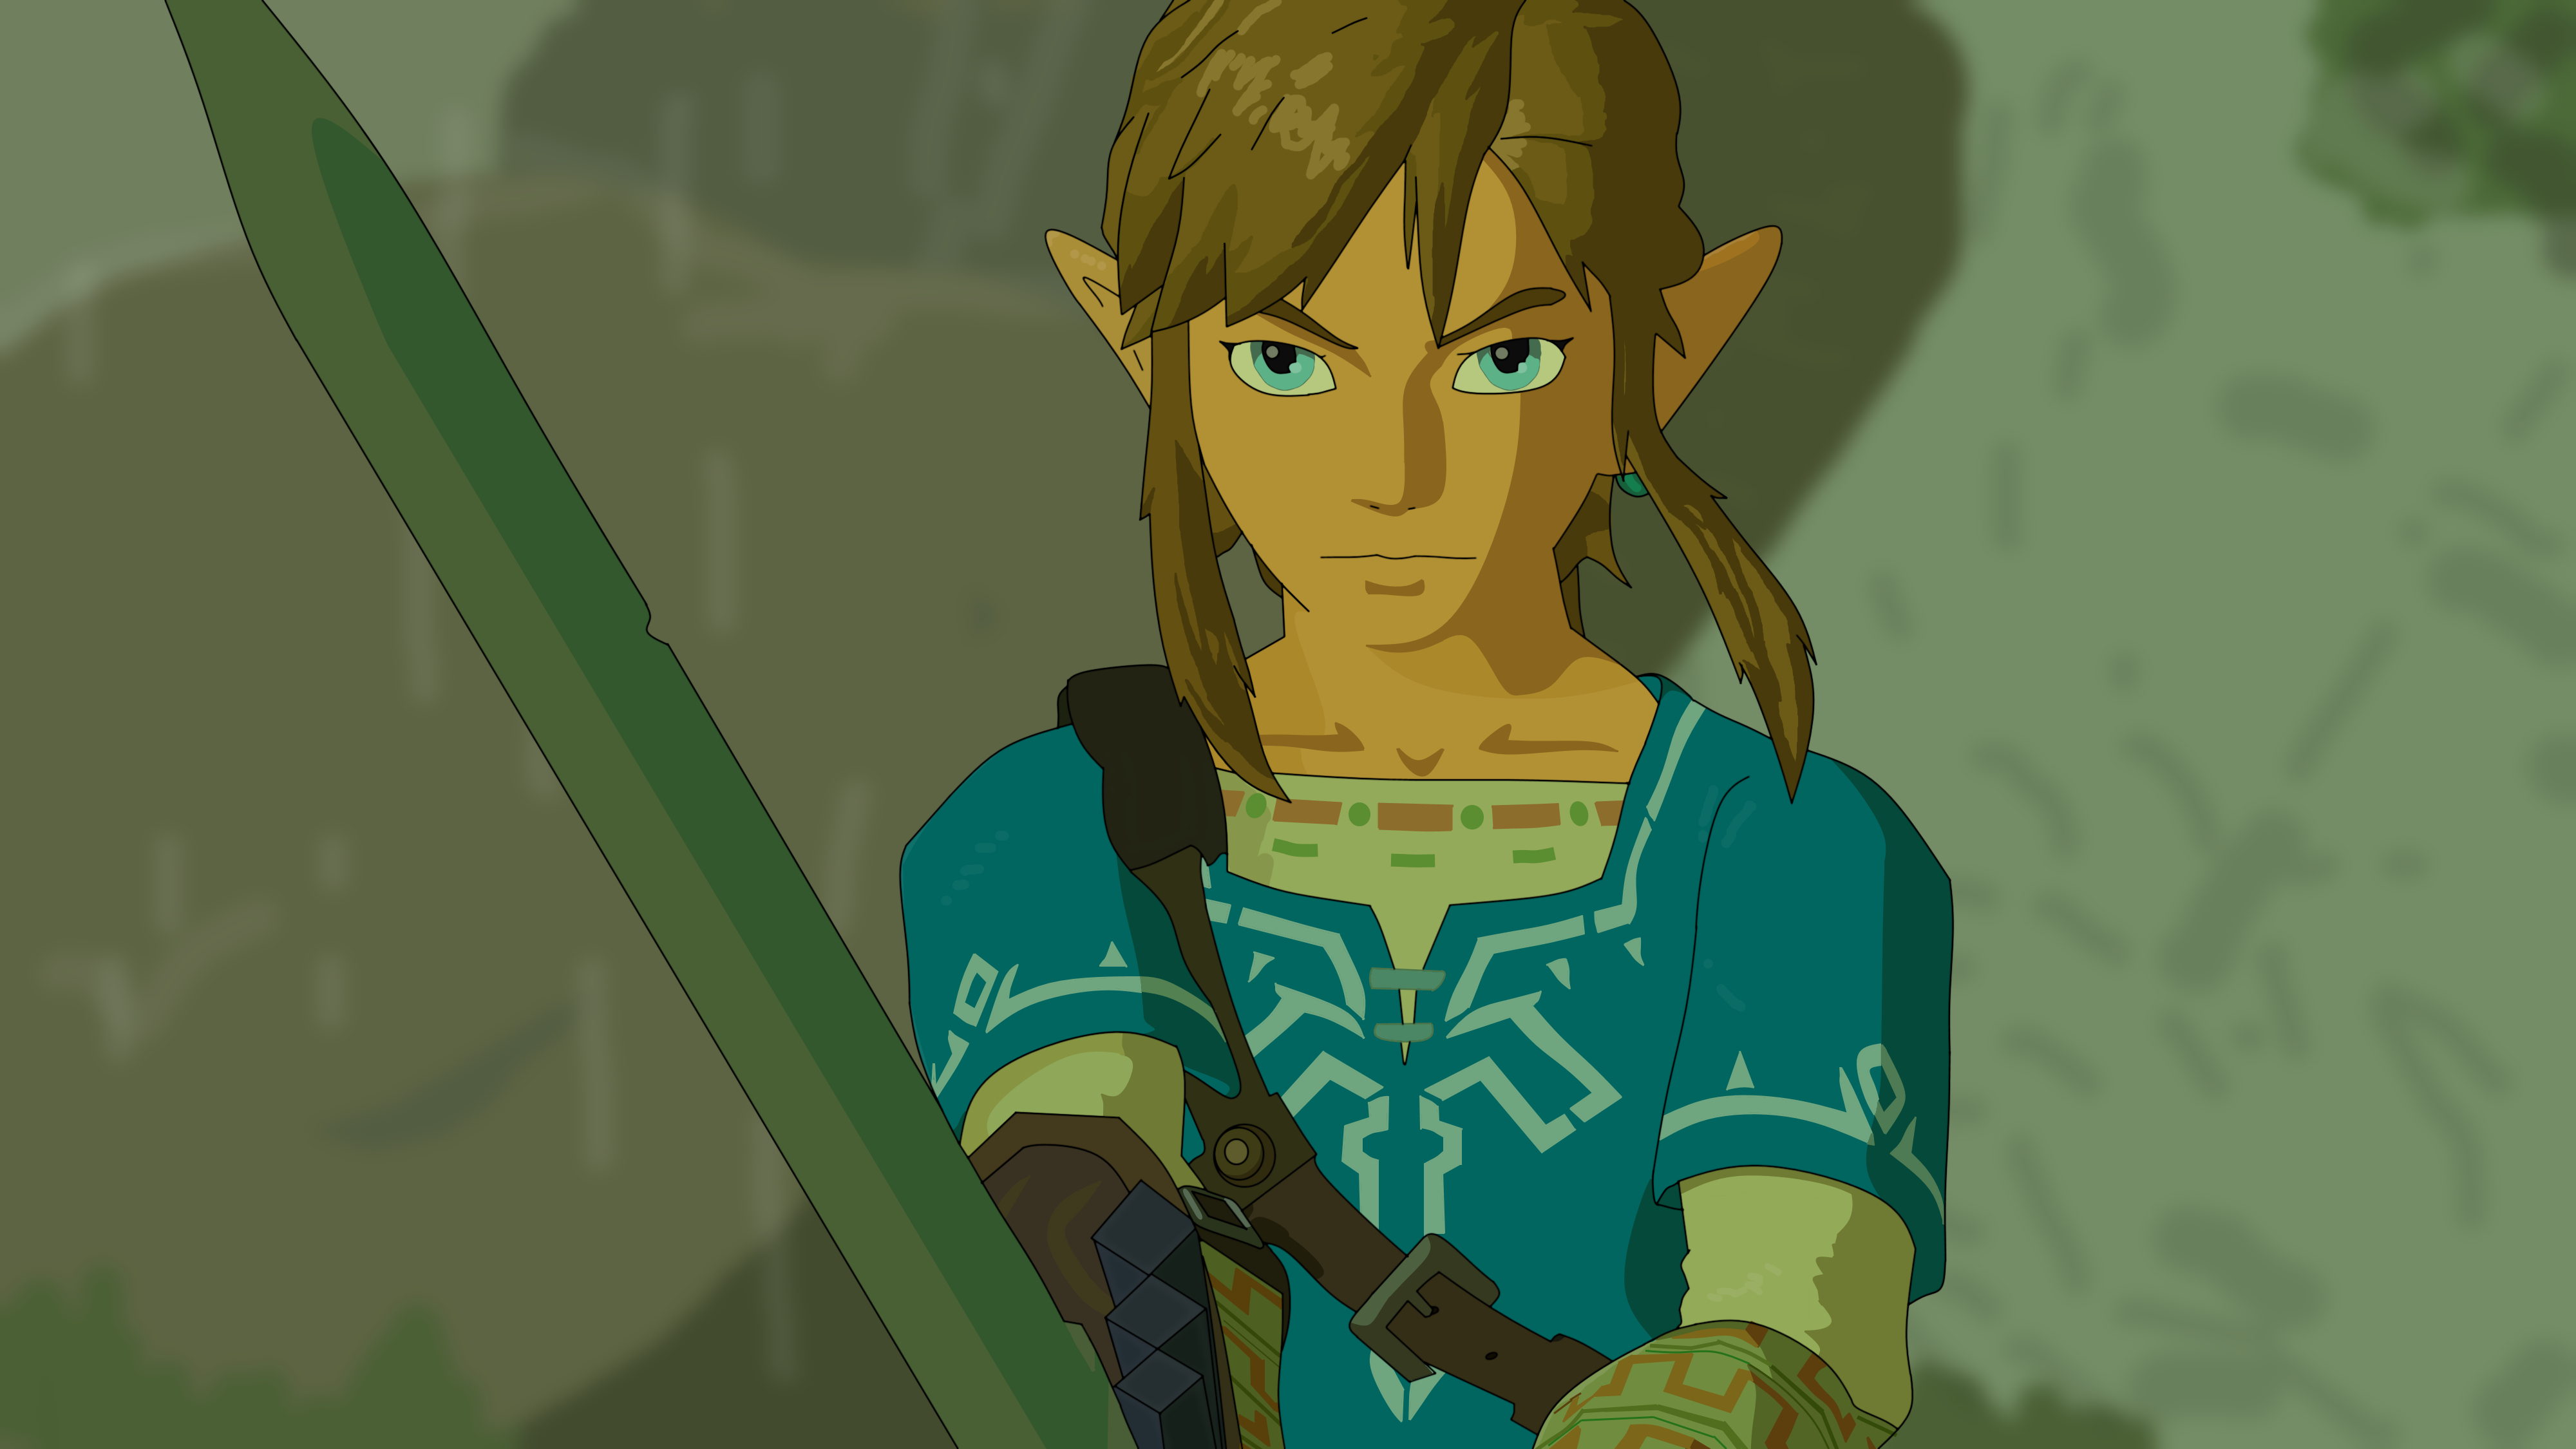 Zelda Breath Of The Wild Link Render By Dakotaatokad On Deviantart